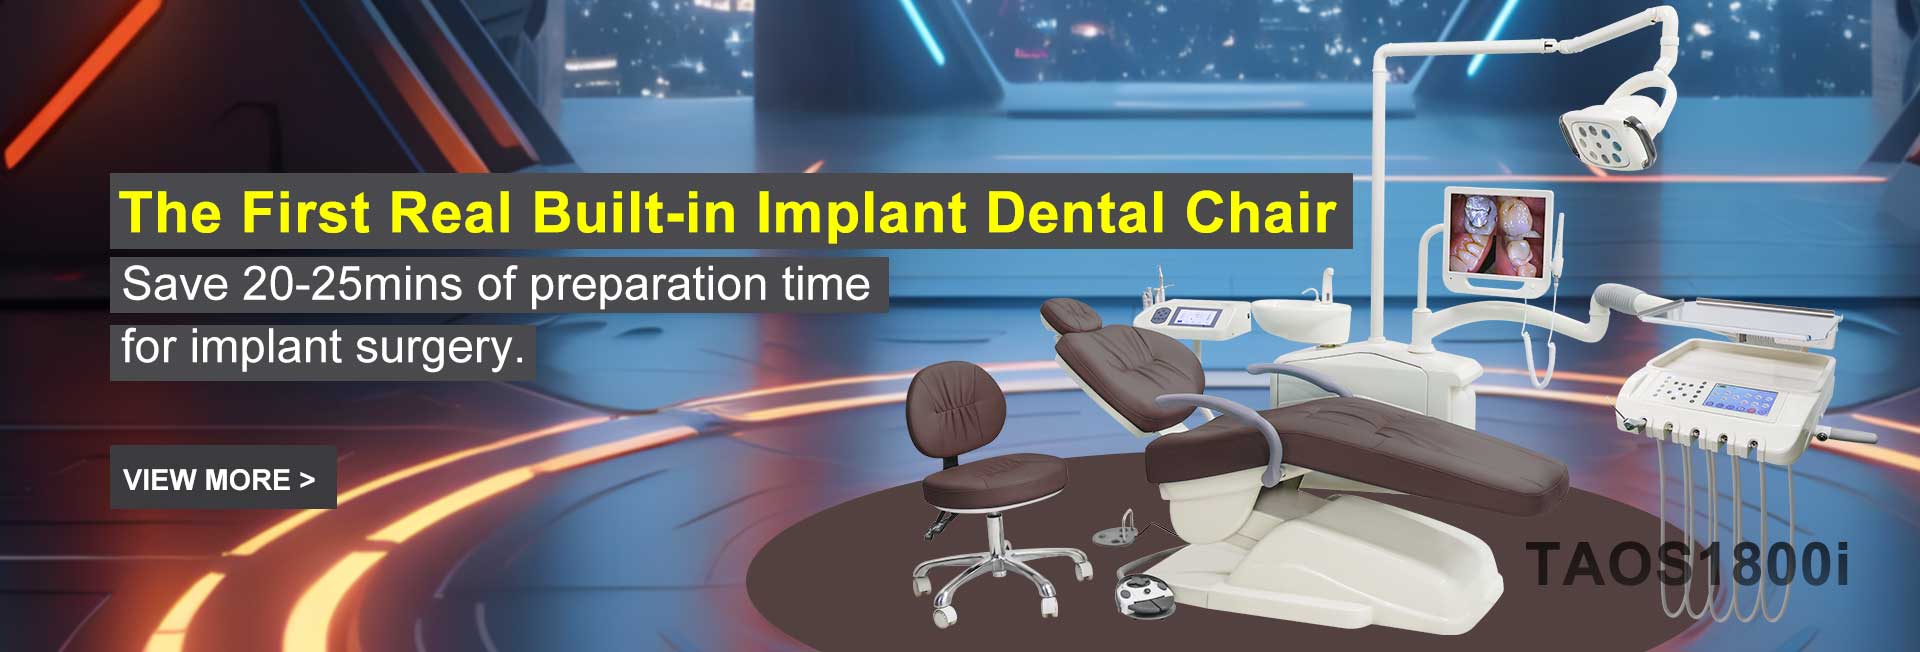 Cadeira cirúrgica para implantes dentários TAOS1800i